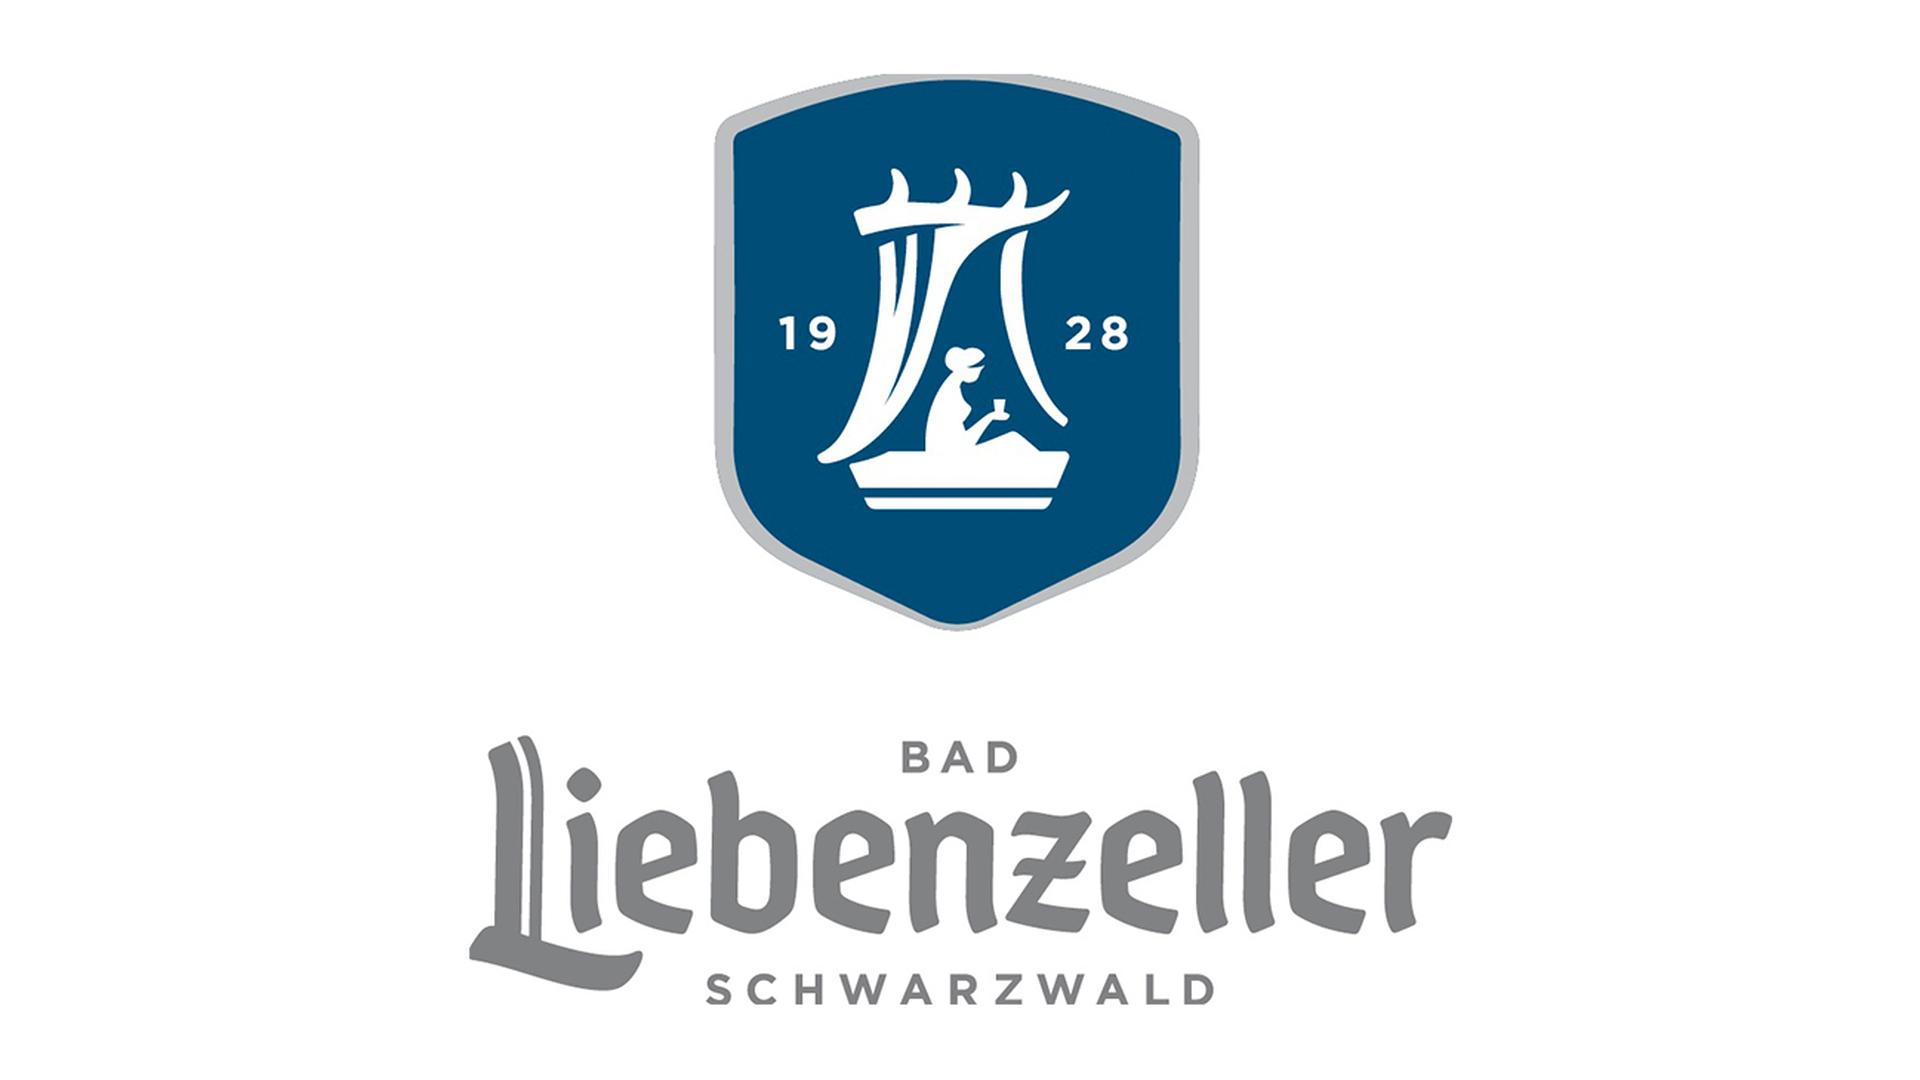 Bad Liebenzeller Schwarzwald